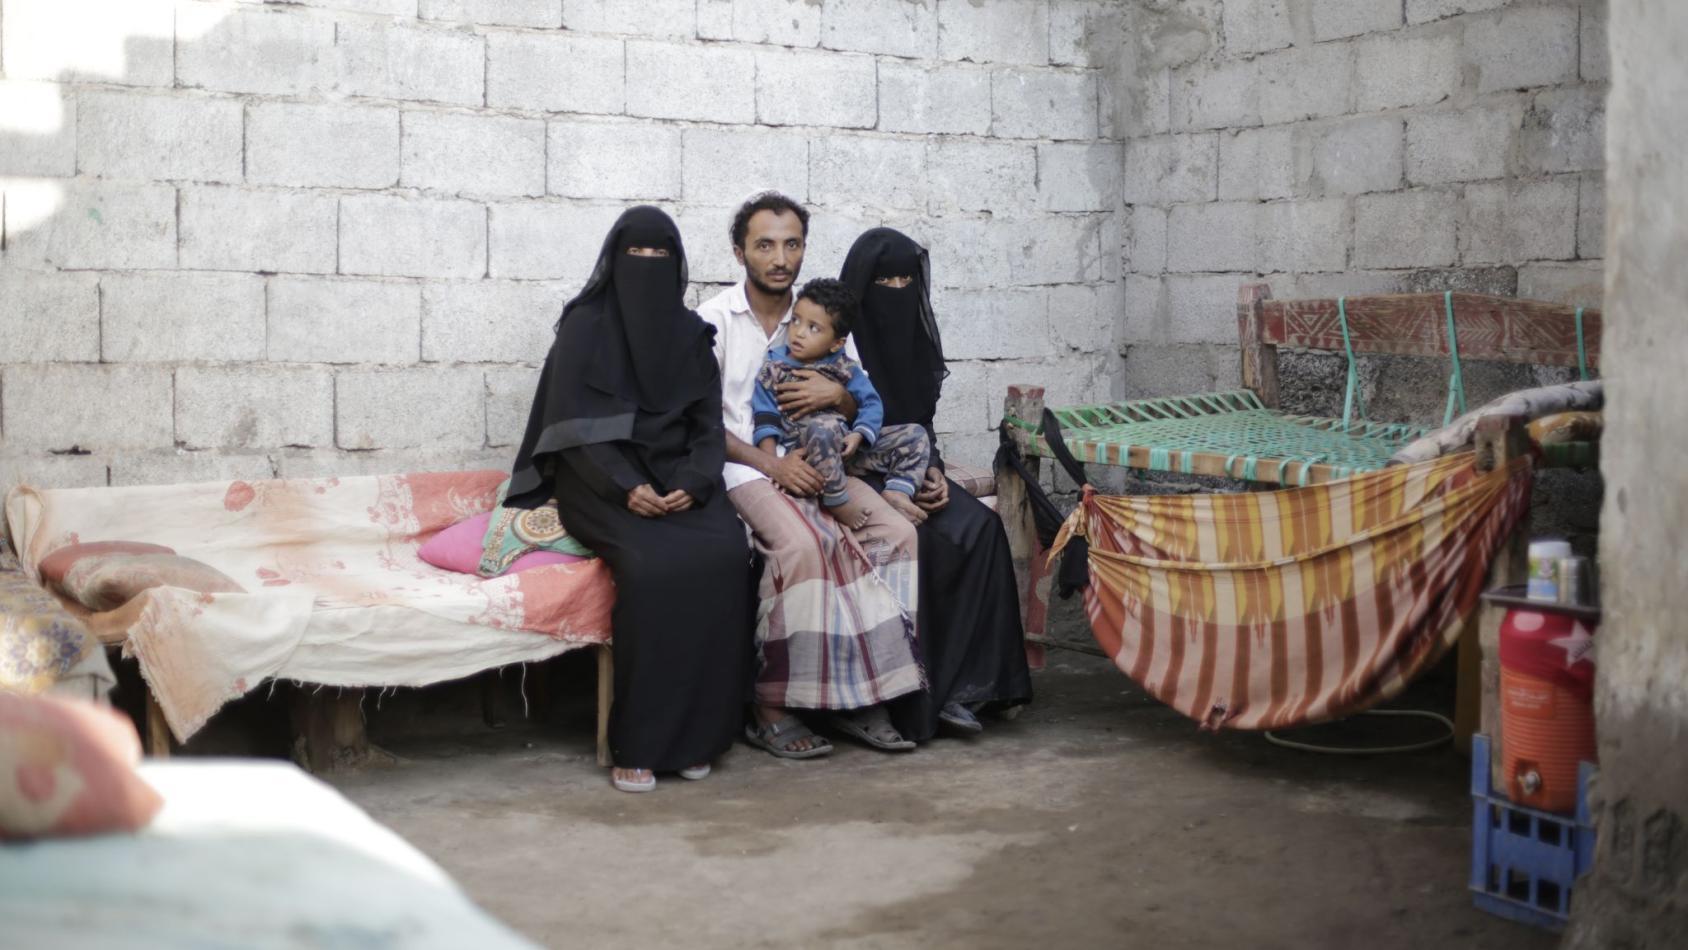 一个男人和两个戴着黑纱的女人坐在一起，孩子坐在他的腿上，在一堵砖墙前。